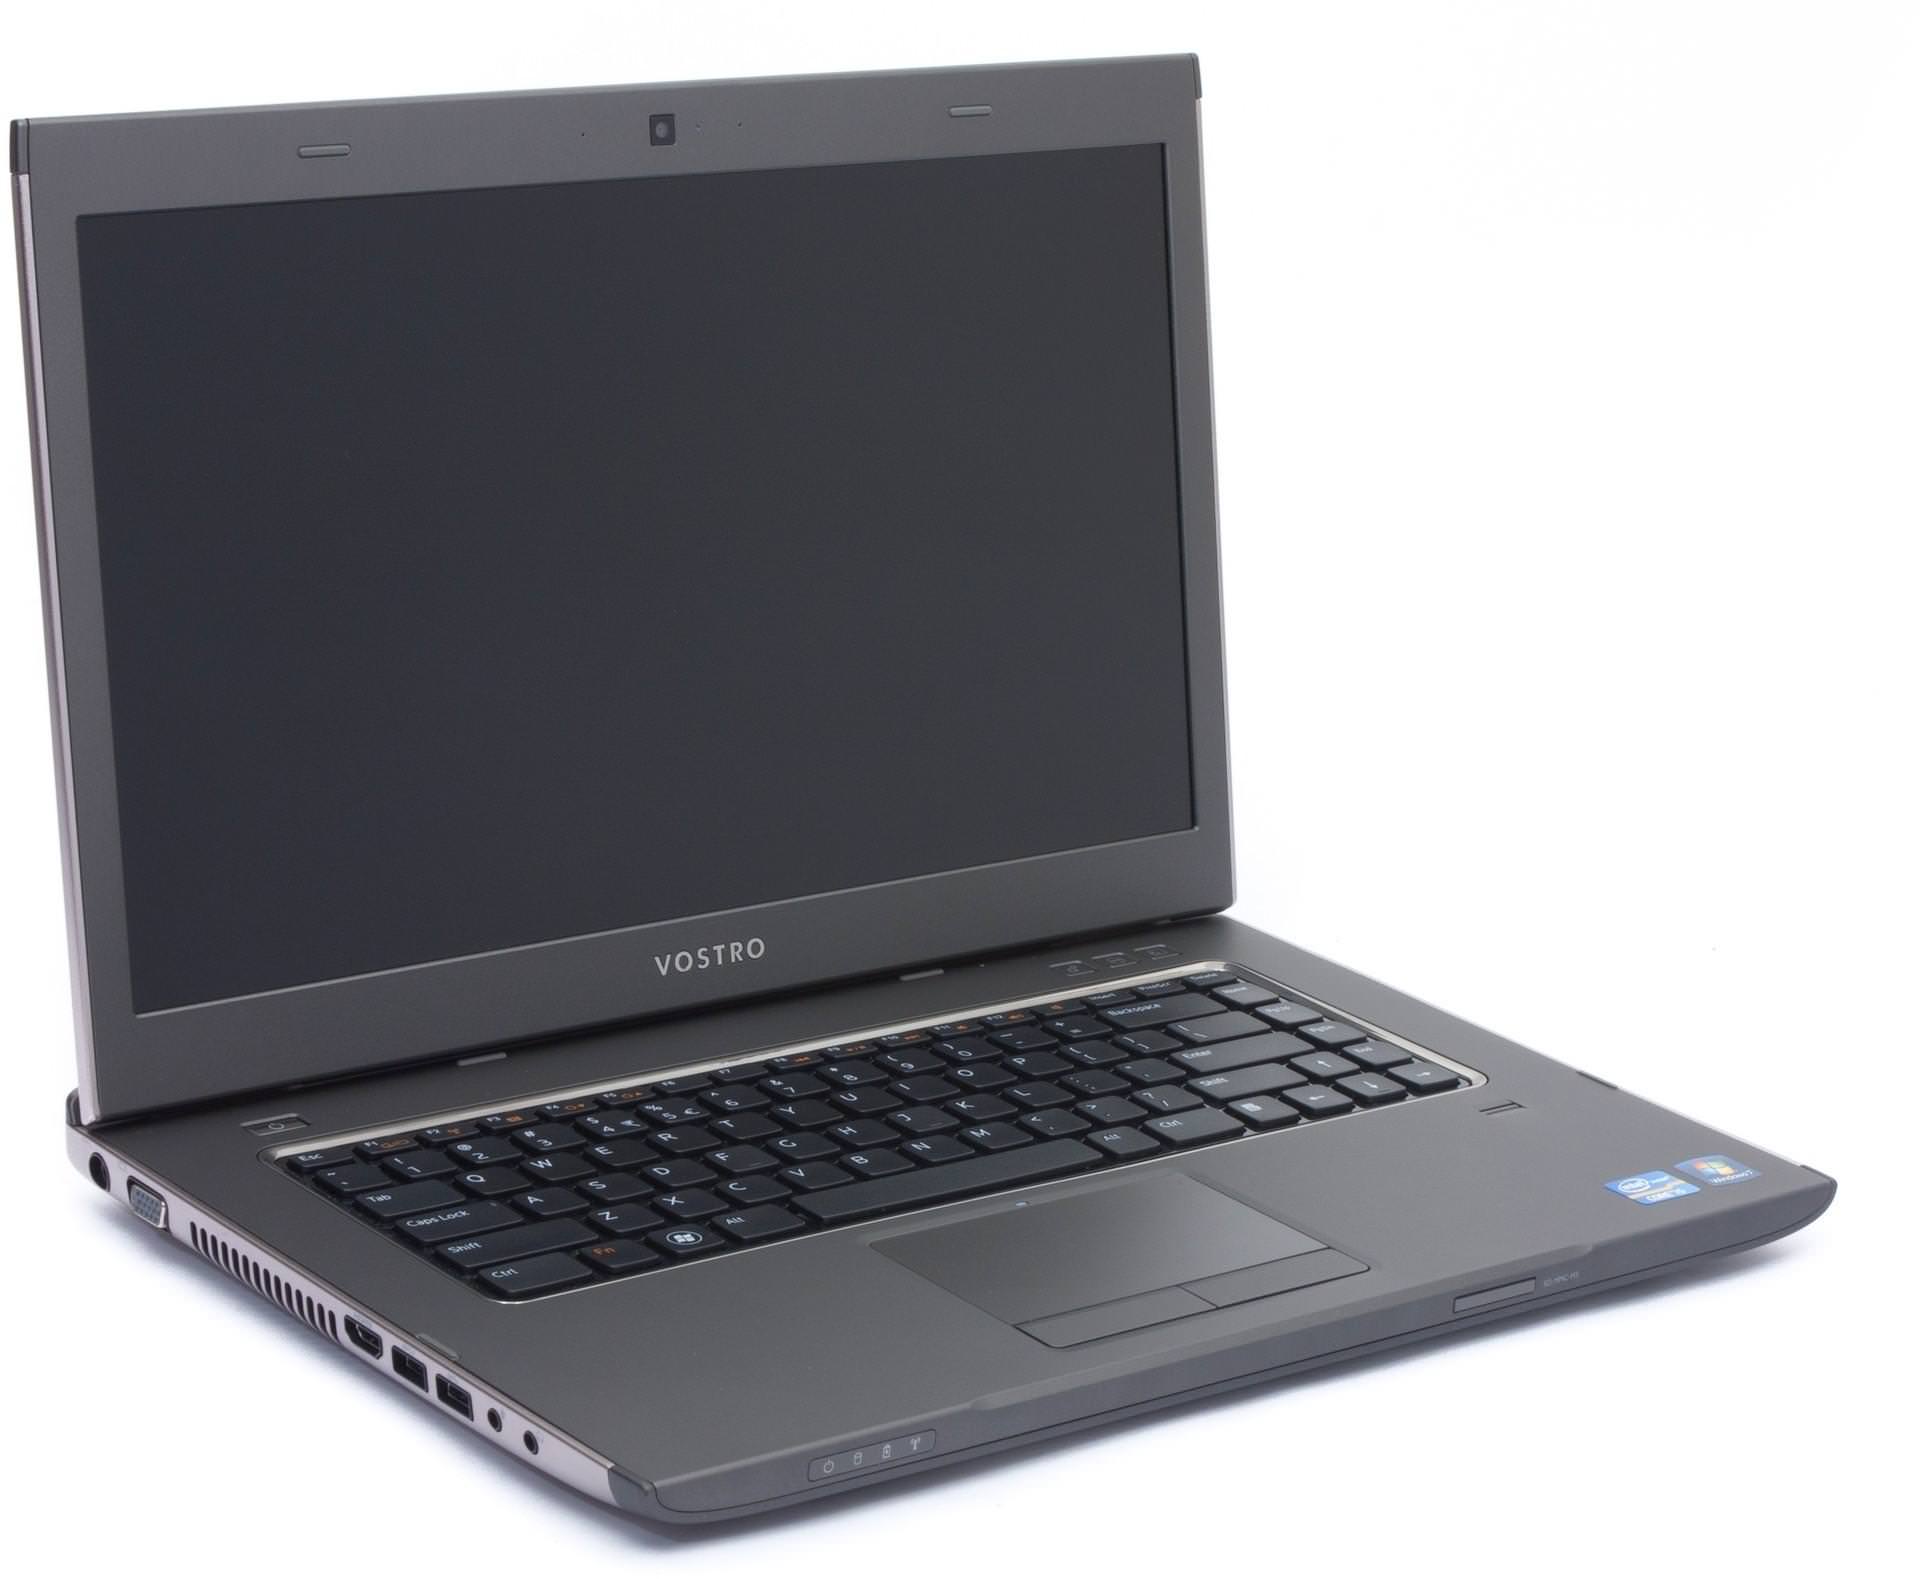 Dell Vostro 3560 Laptop (Core i5 3rd Gen/4 GB/500 GB/Linux/1) Price